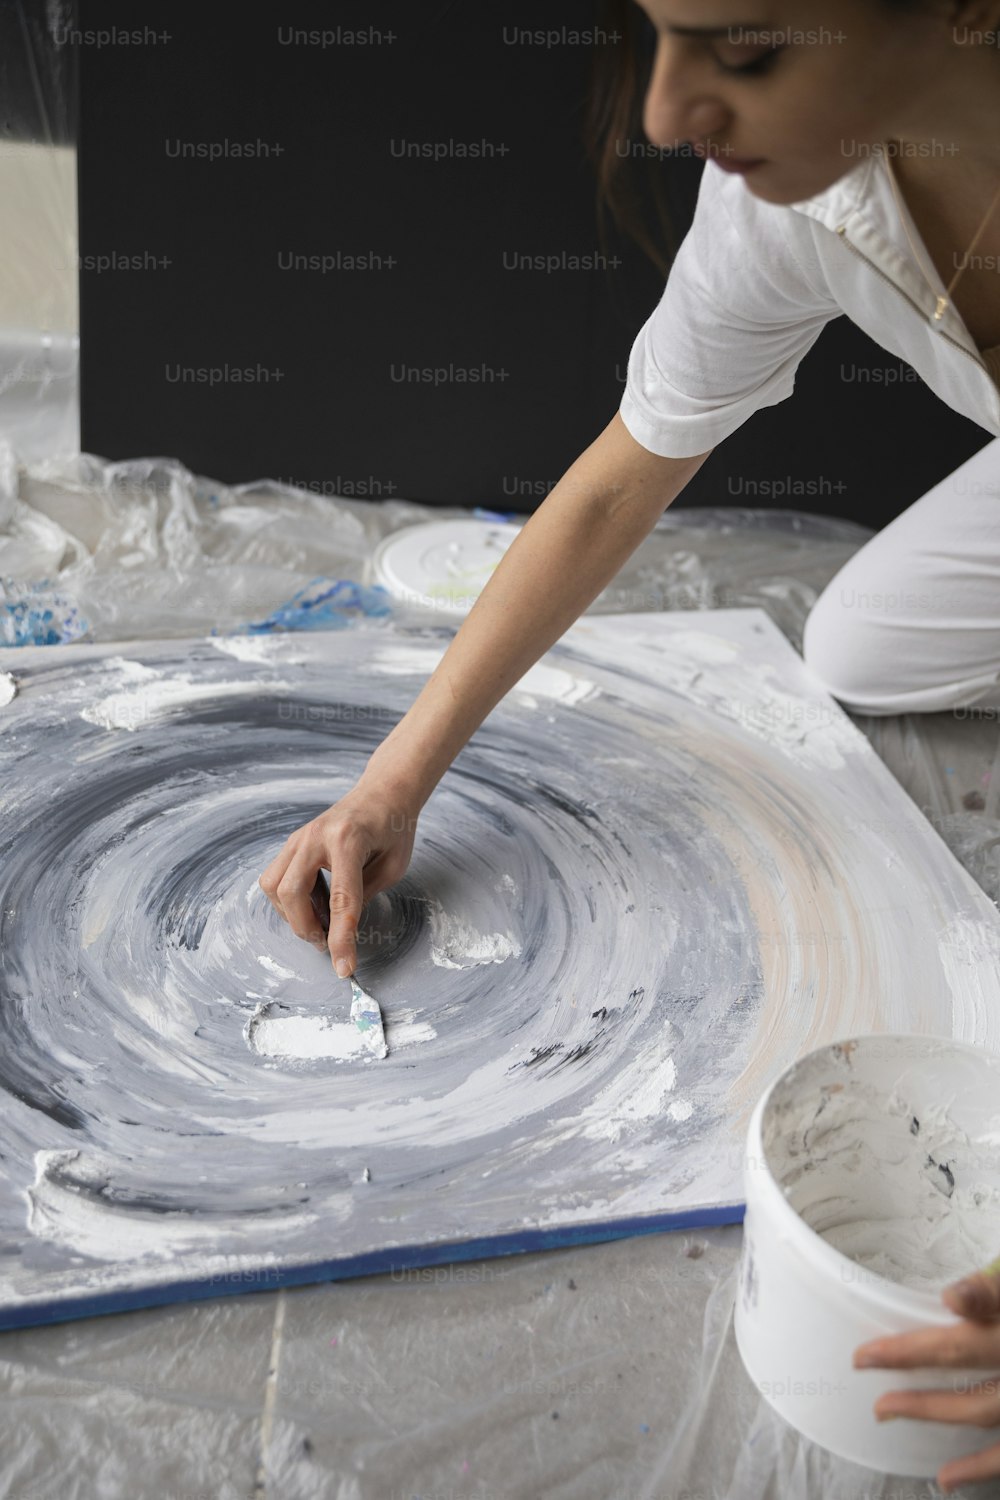 Una donna sta dipingendo un quadro su una tela